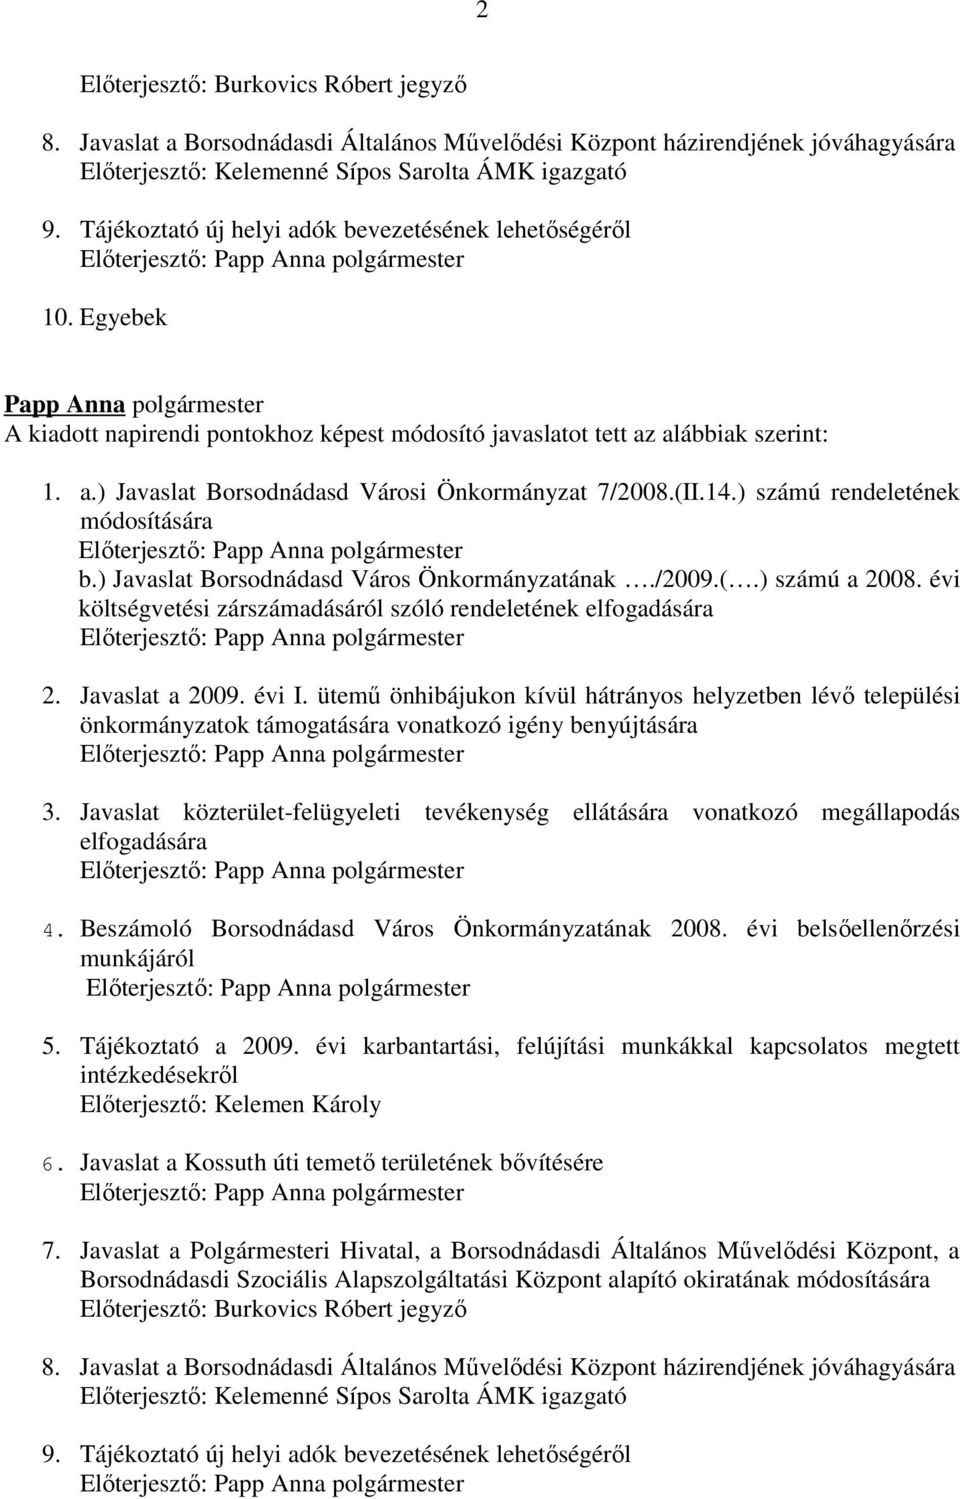 (II.14.) számú rendeletének módosítására Előterjesztő: b.) Javaslat Borsodnádasd Város Önkormányzatának./2009.(.) számú a 2008.